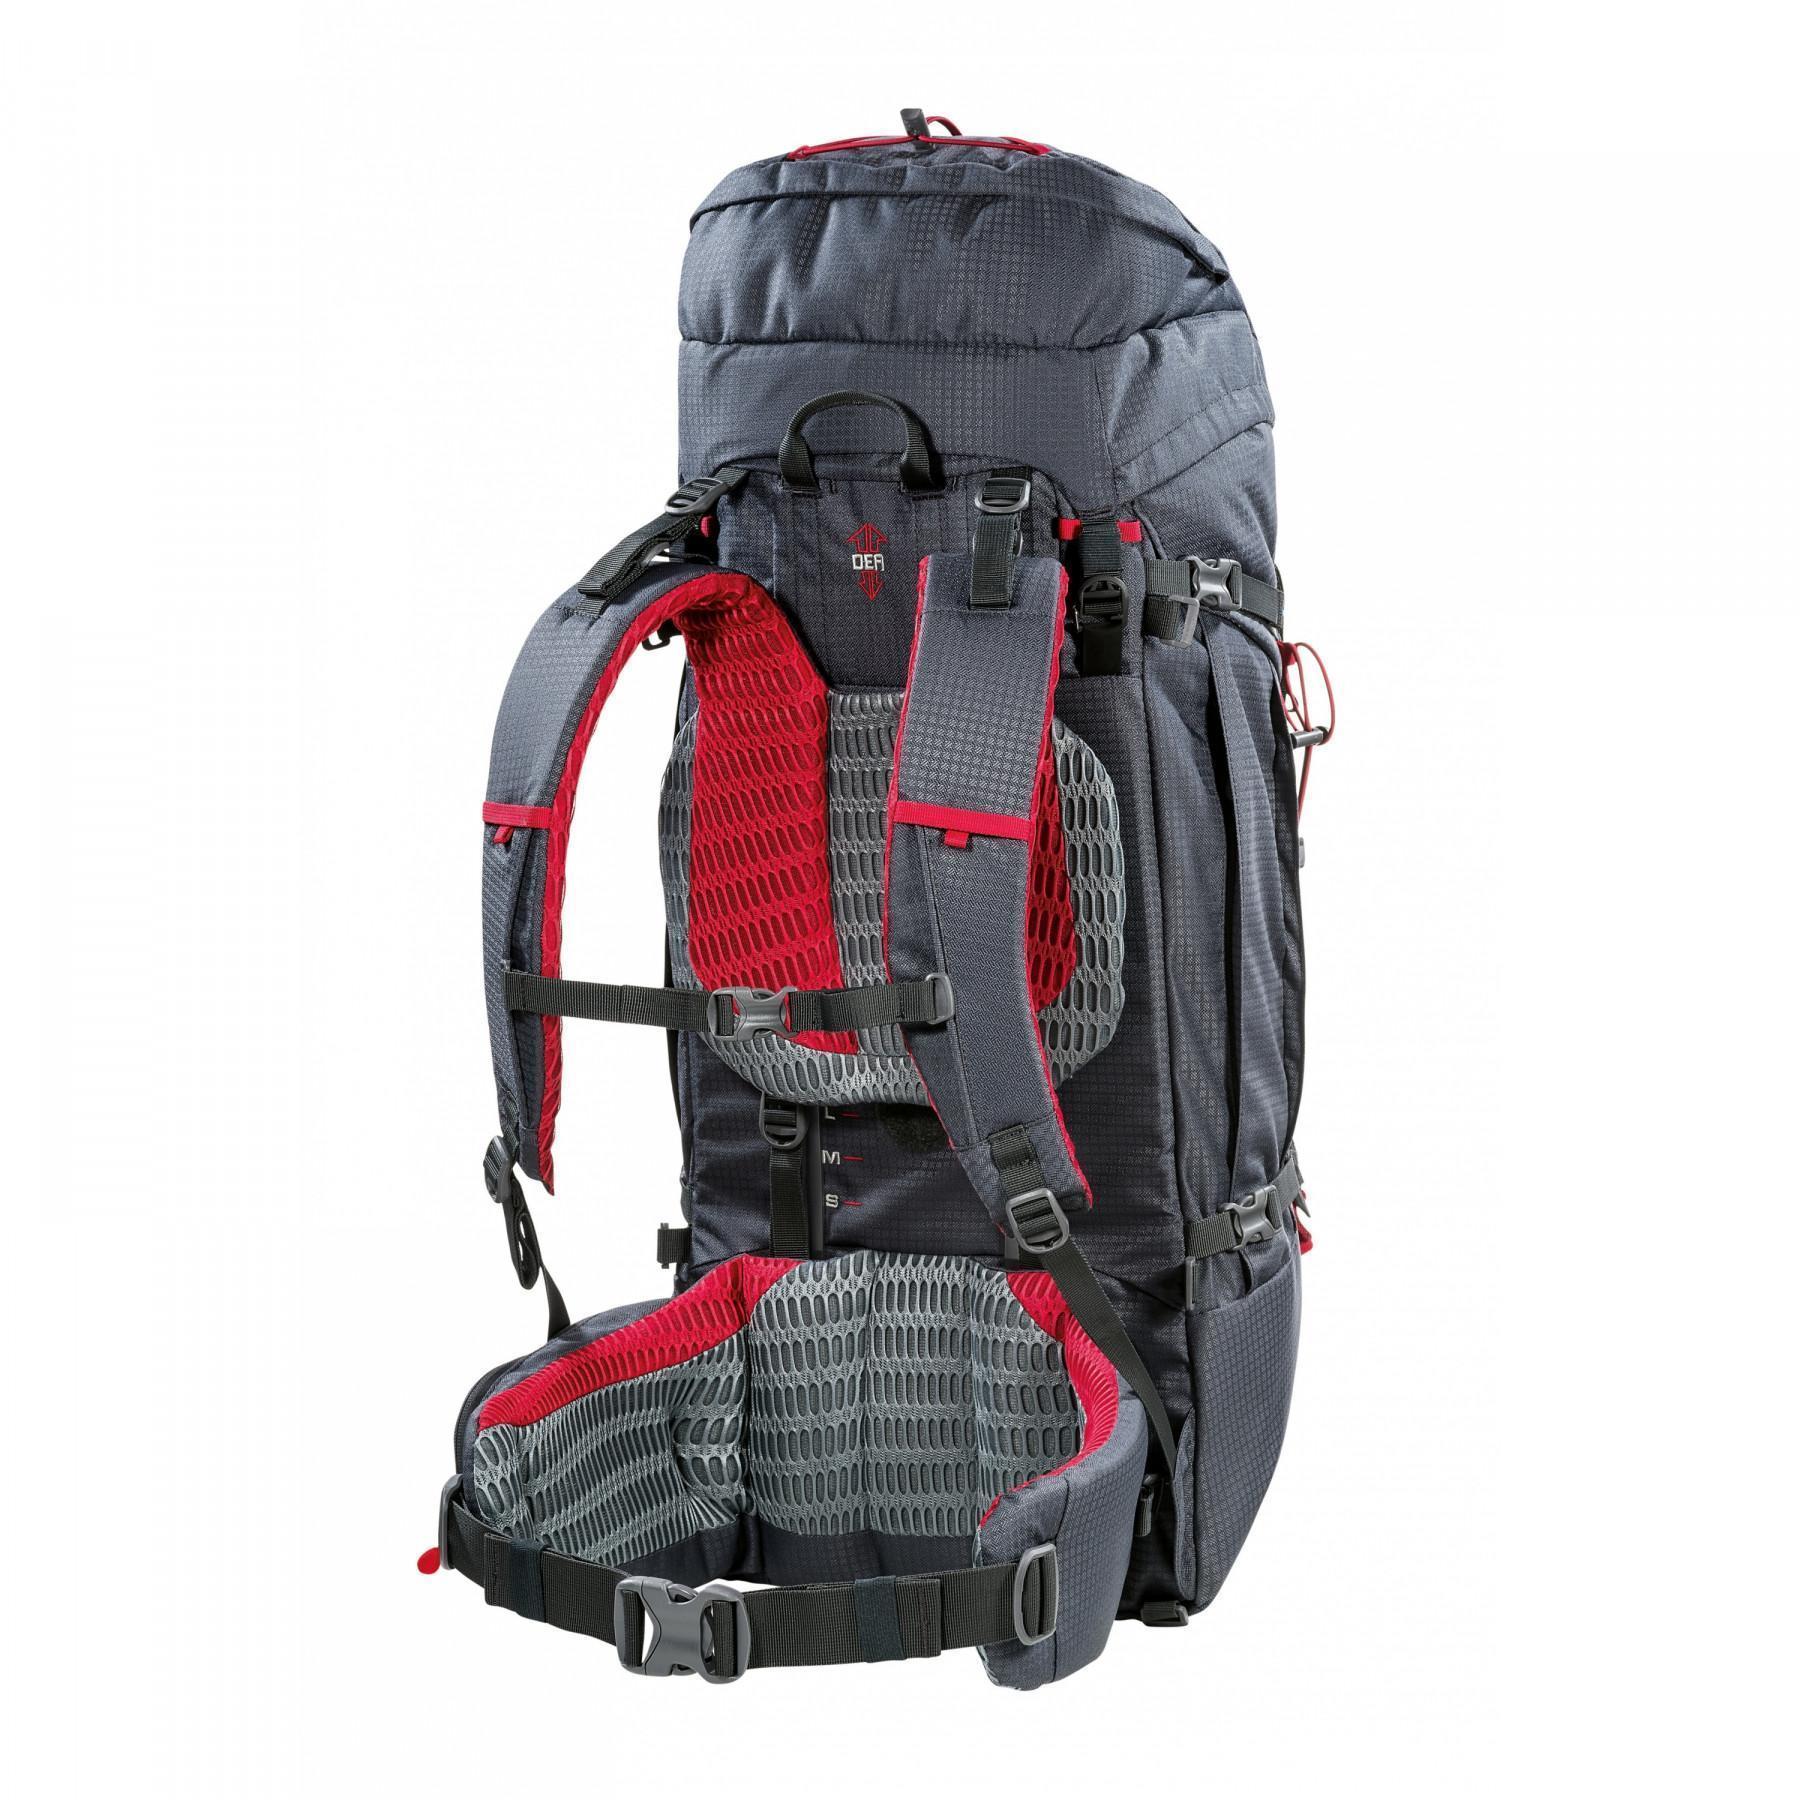 Backpack Ferrino overland 65+10L